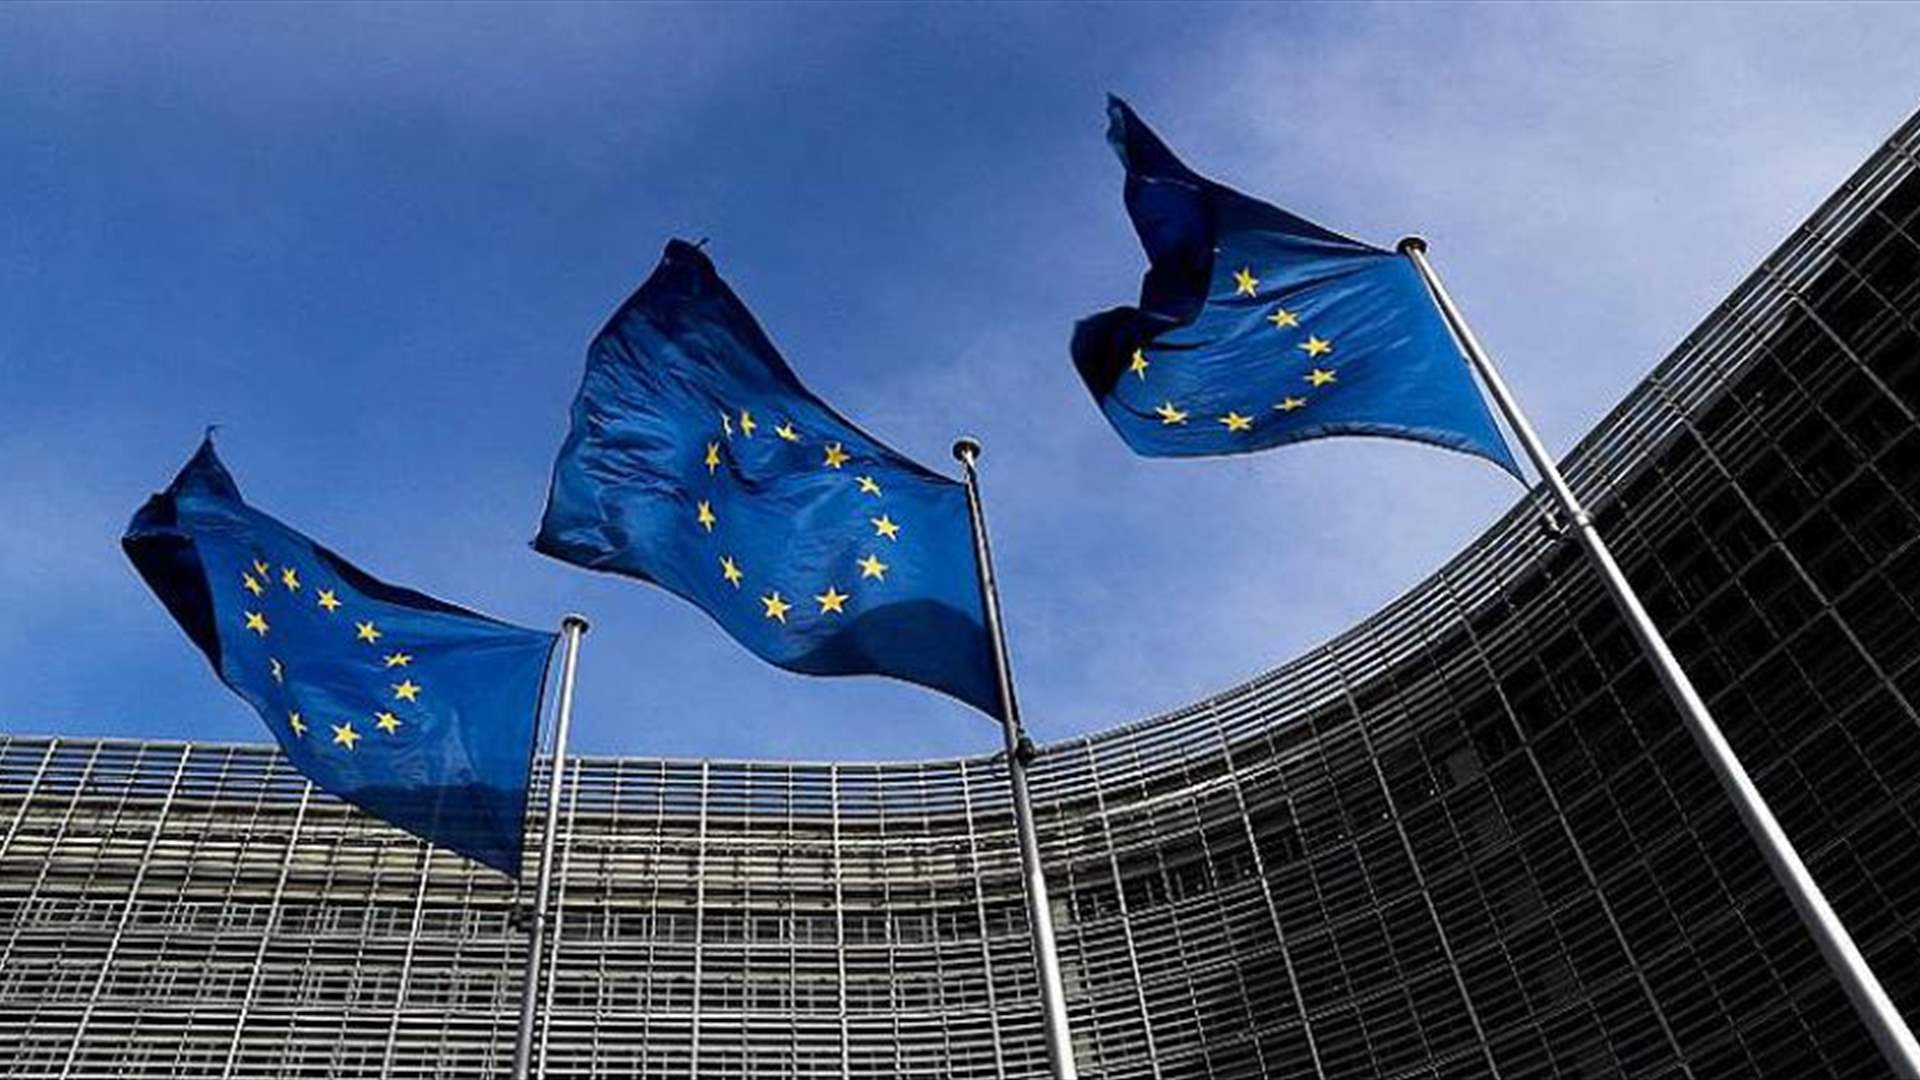 الاتحاد الأوروبي يتوصل لاتفاق على تحديد سقف لأسعار المشتقات النفطية الروسية